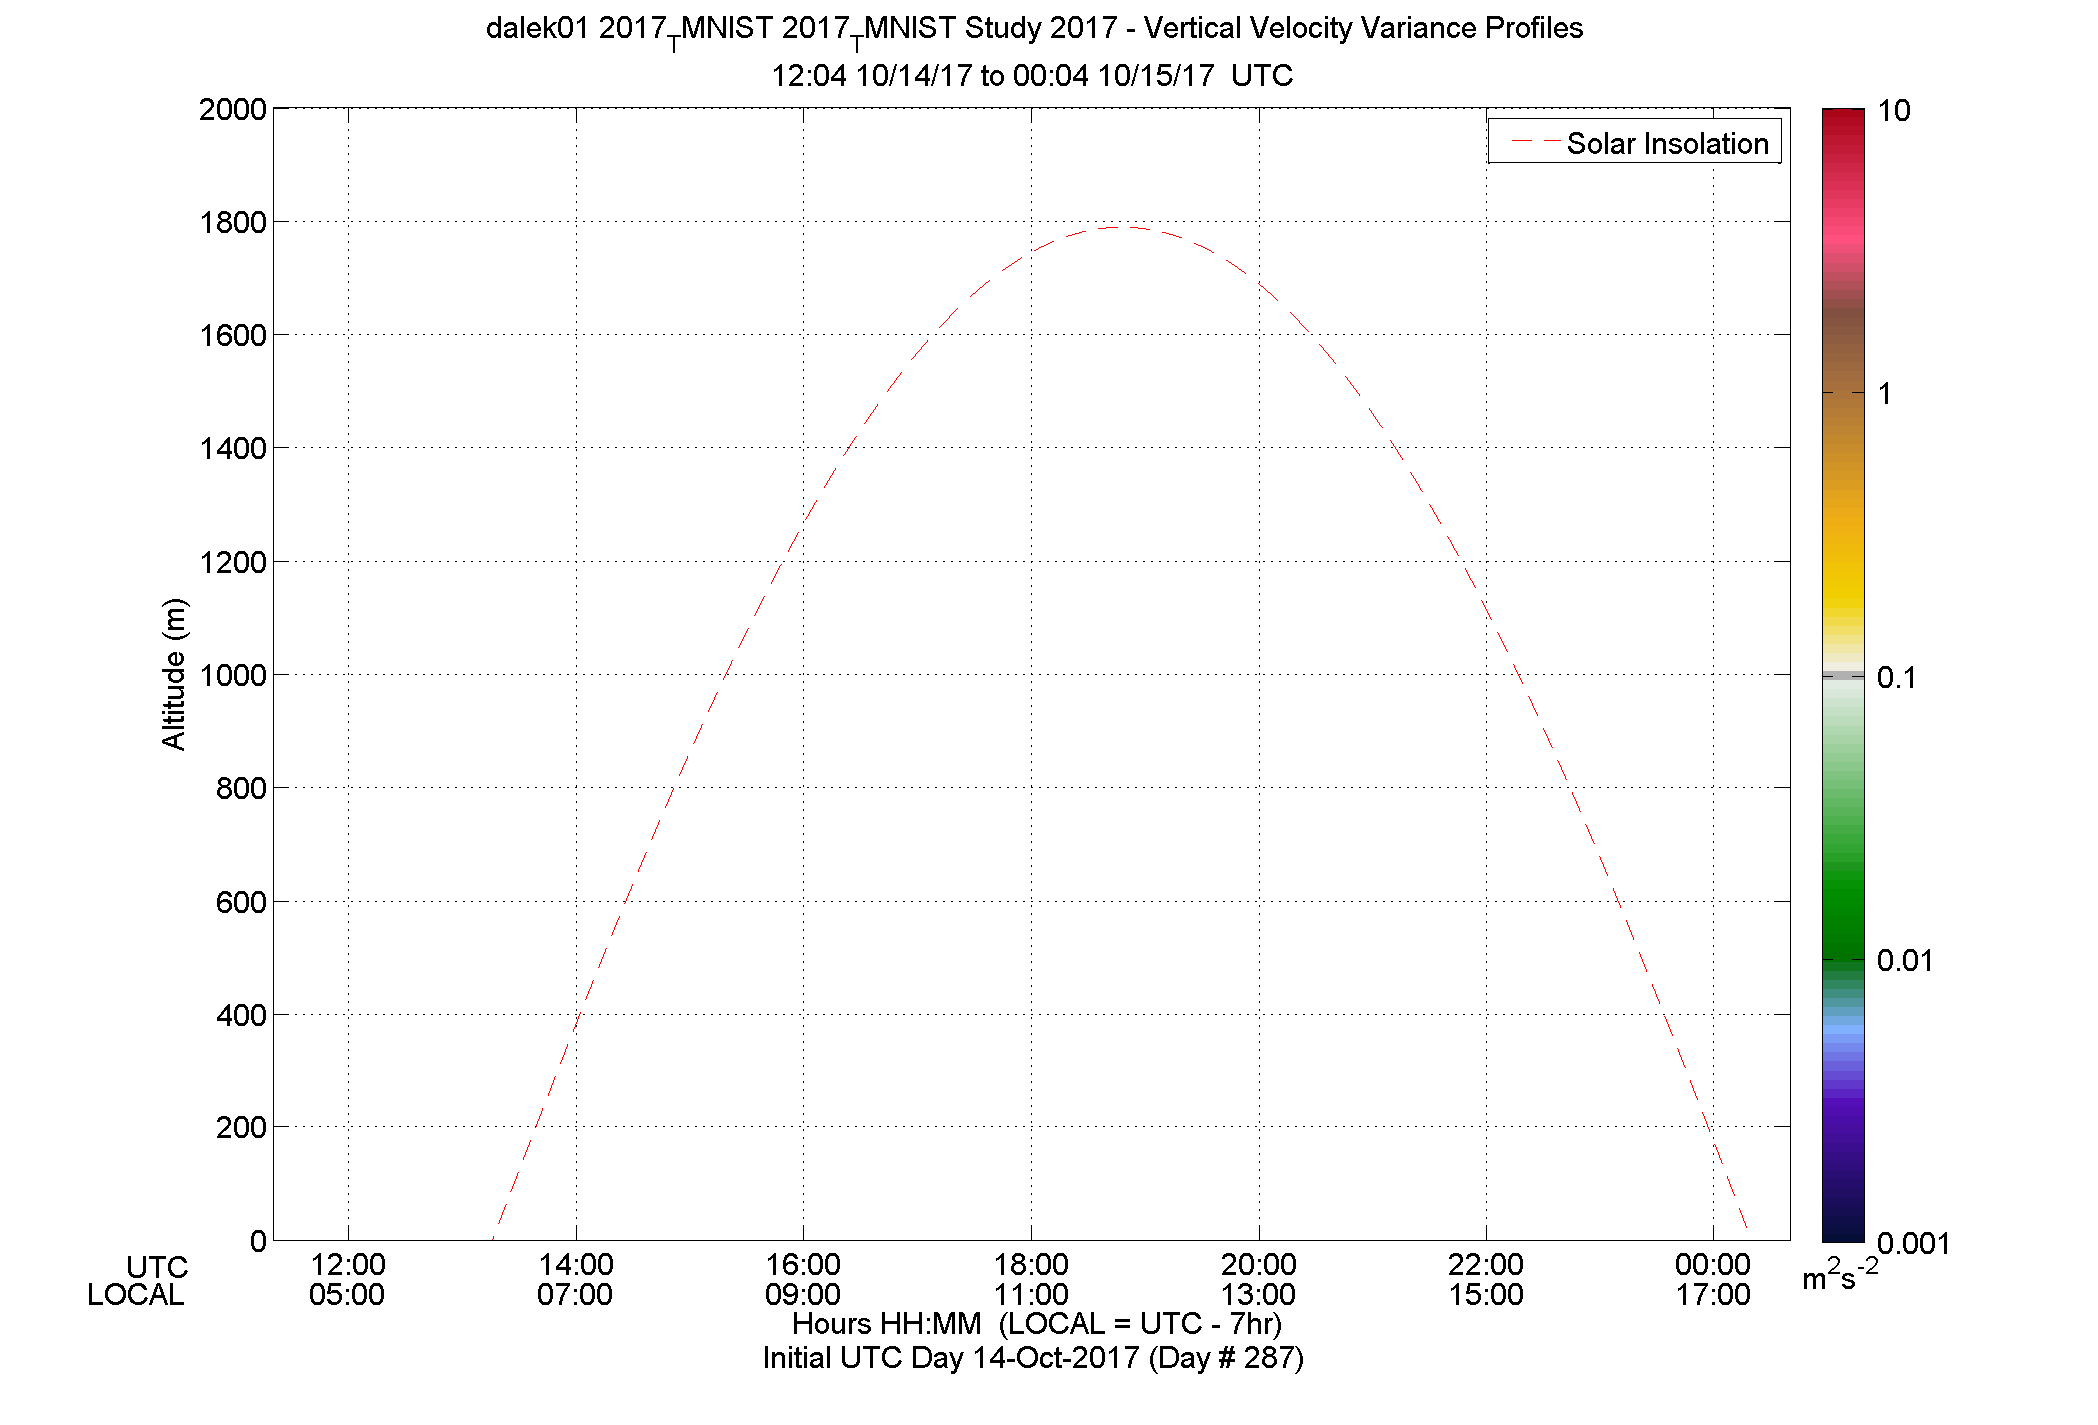 DALEK vertical variance profile - October 14 pm